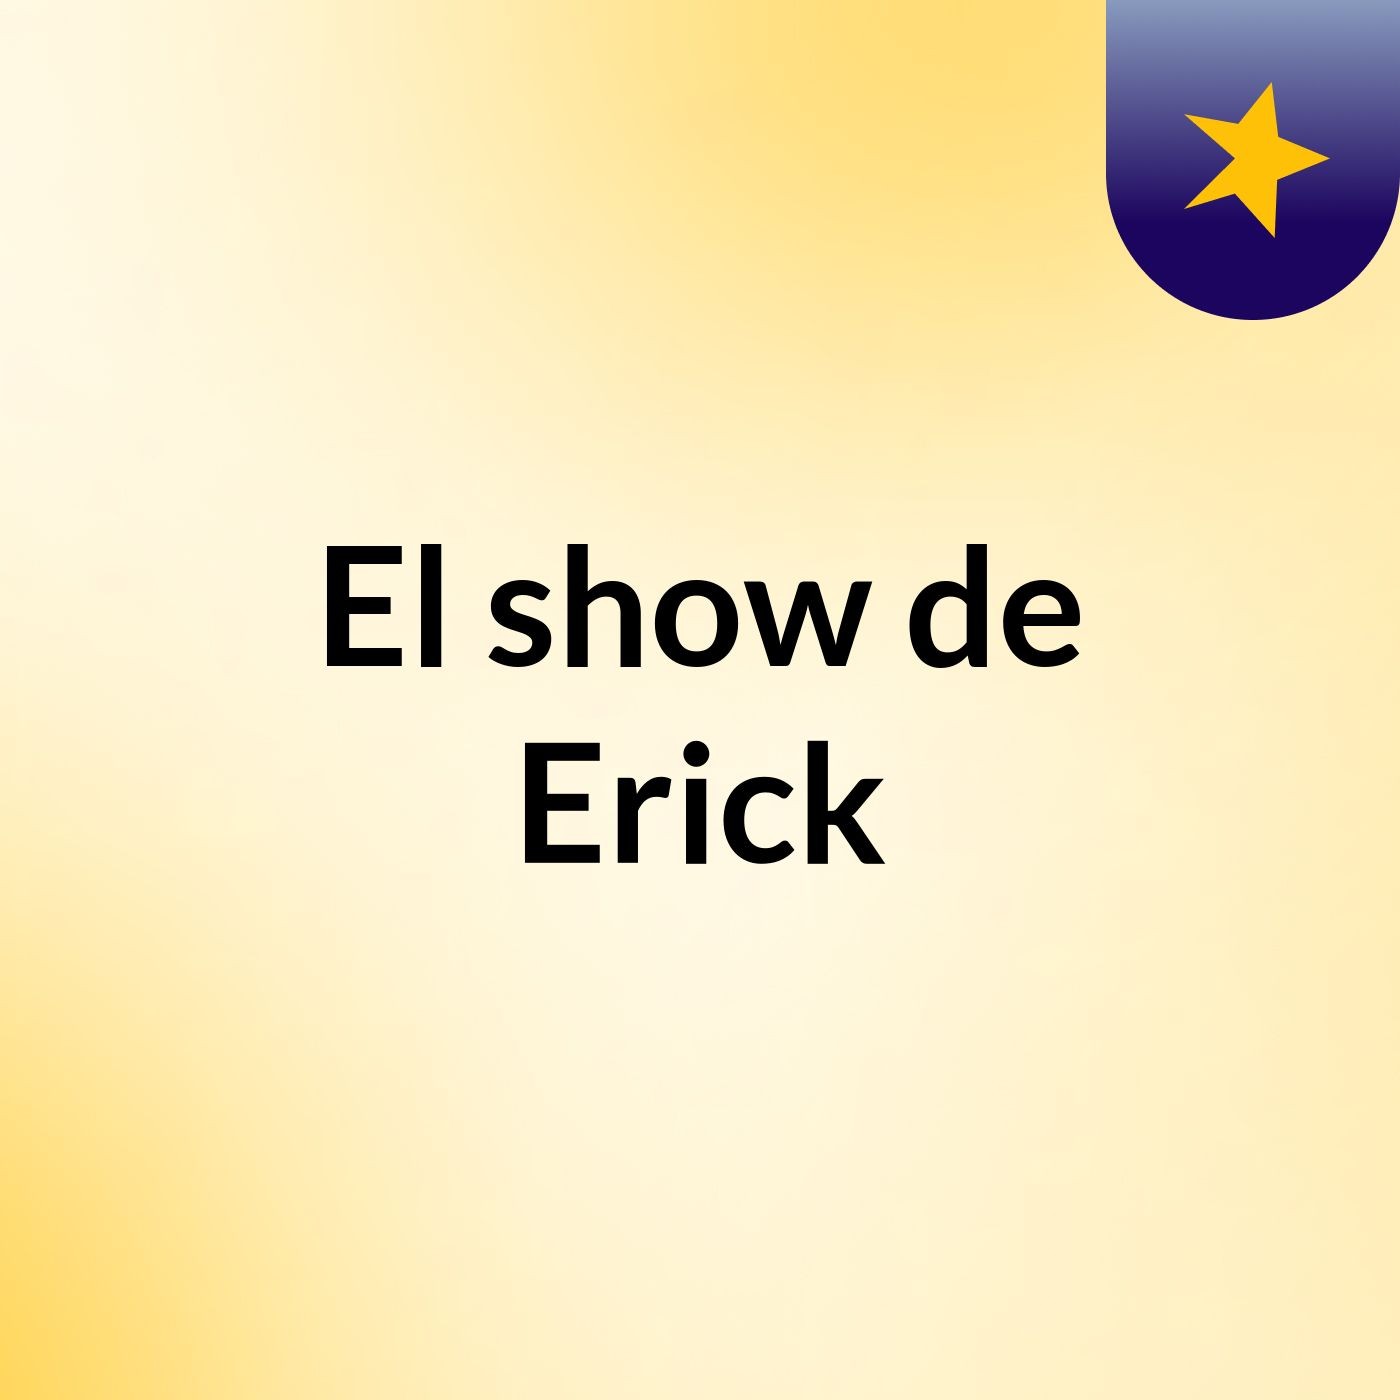 El show de Erick